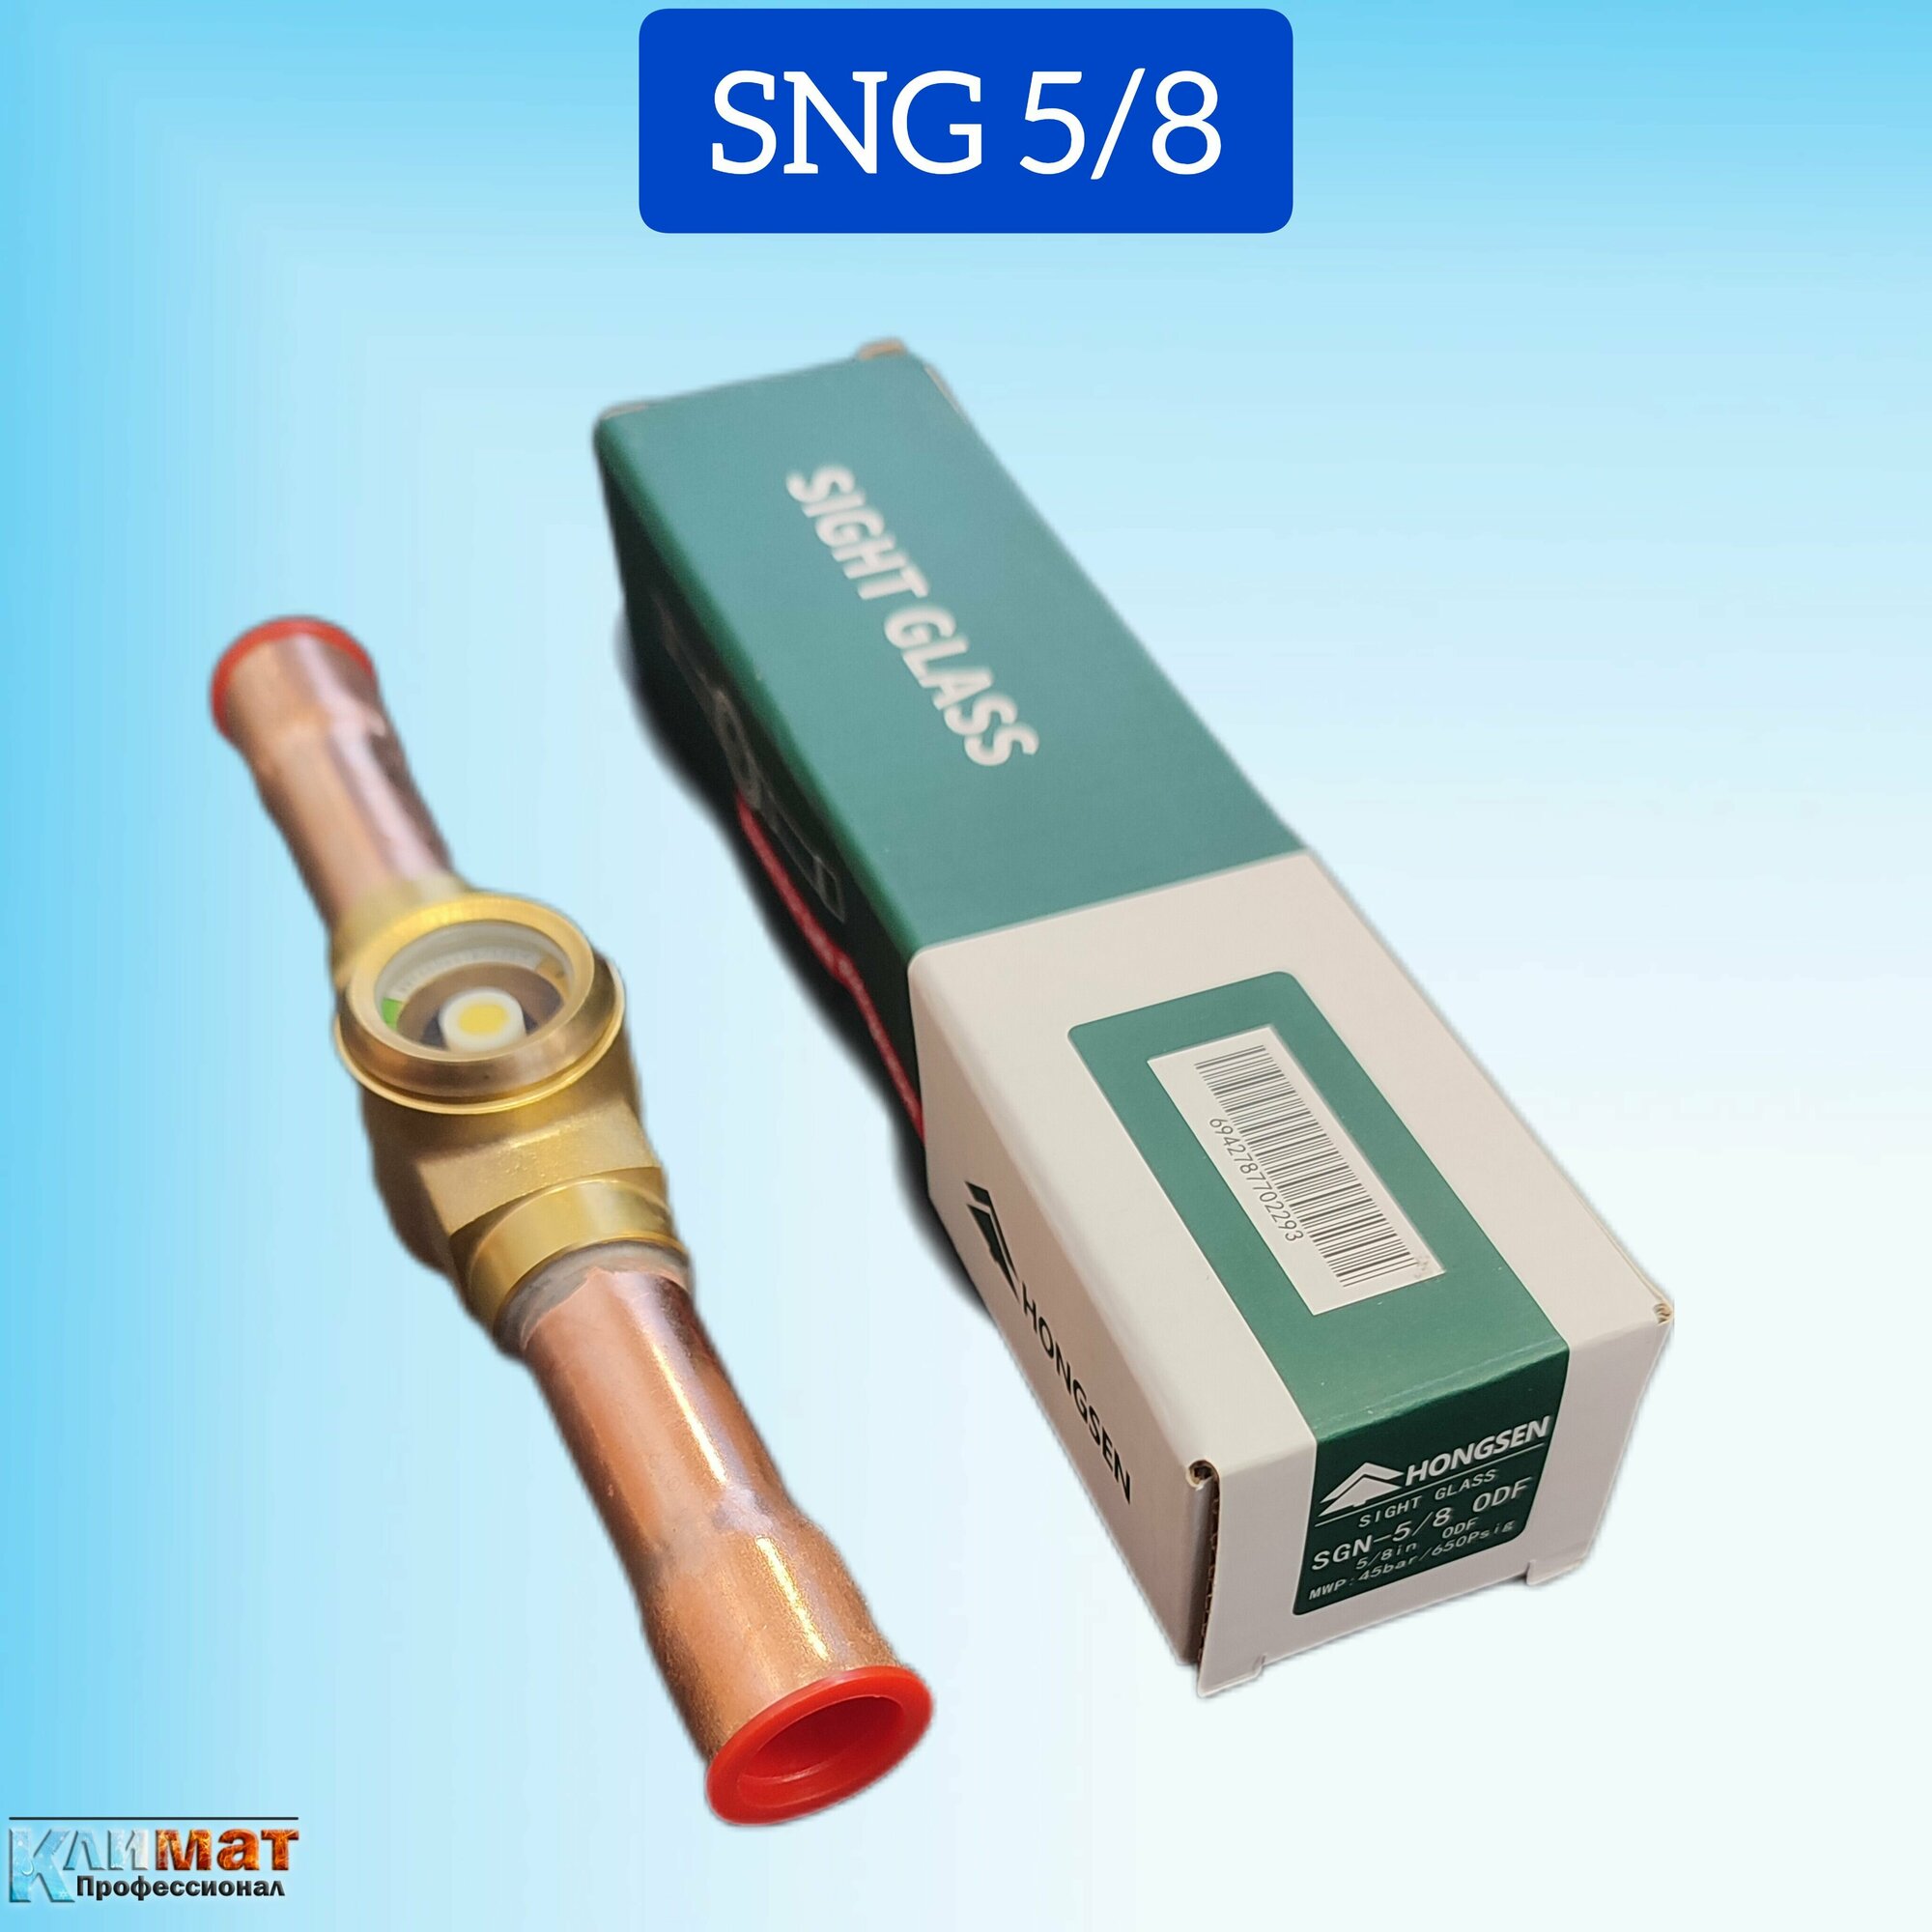 Смотровое стекло Hongsen SGN 5/8" с индикатором влажности пайка